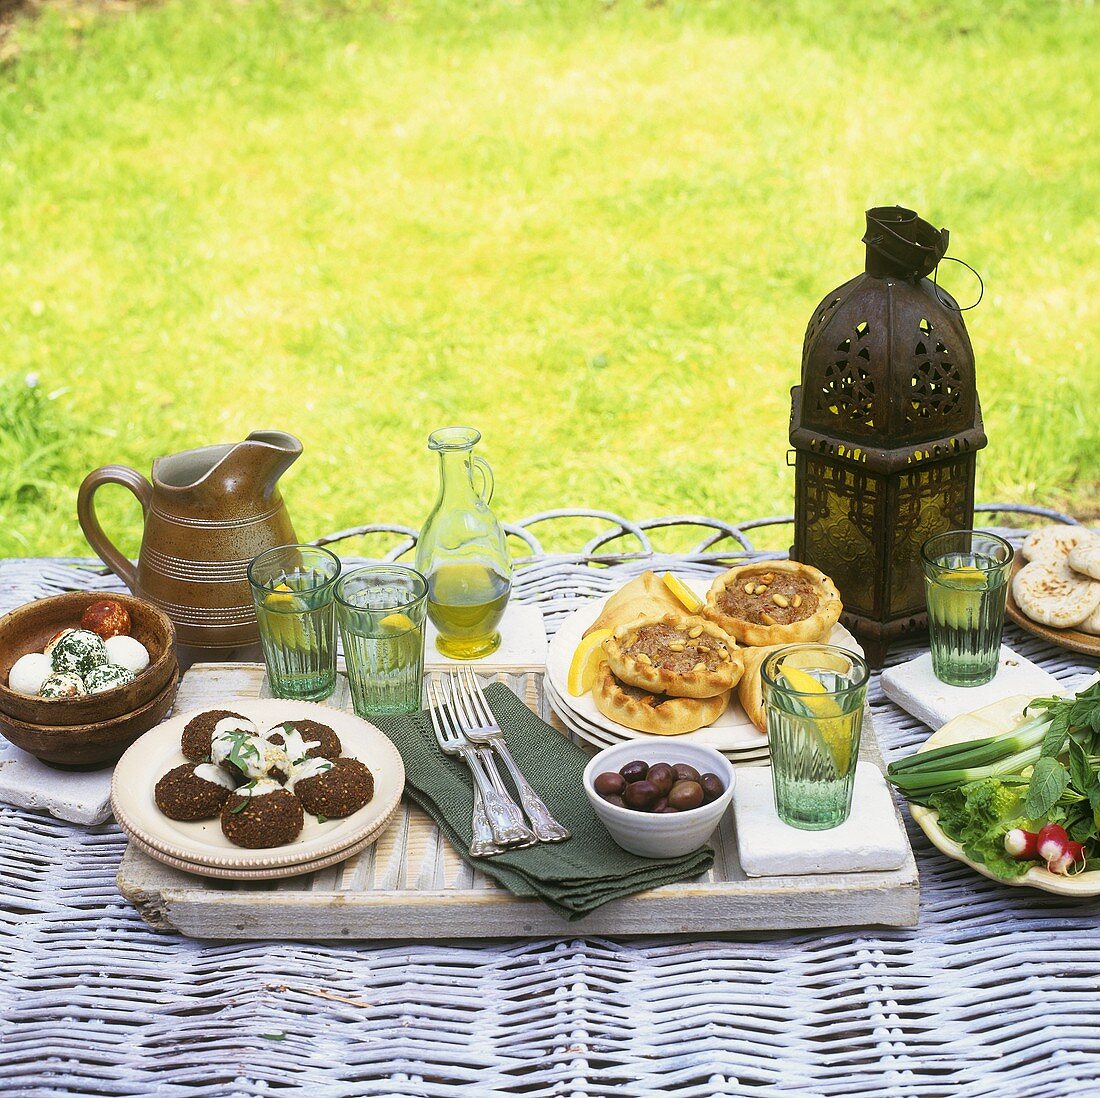 Picknick mit pikanten Gerichten( Käse, Falafel, Tarteletts)